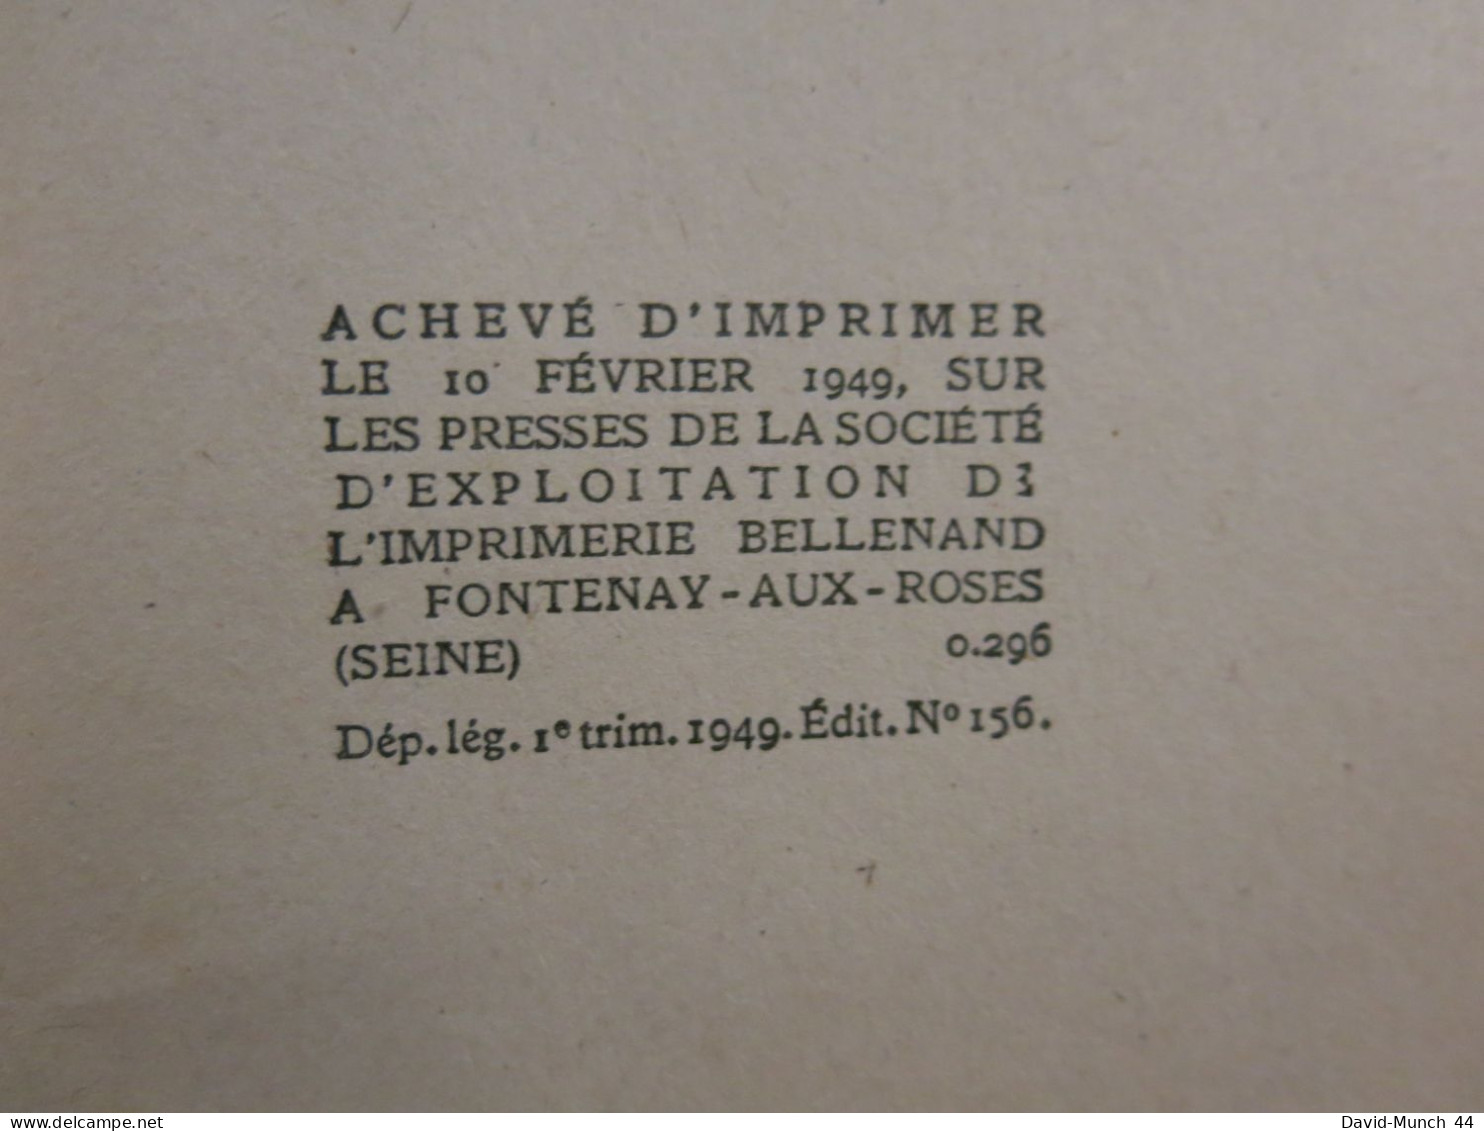 La dame en noir de Peter Cheyney. Presses de la Cité. 1949